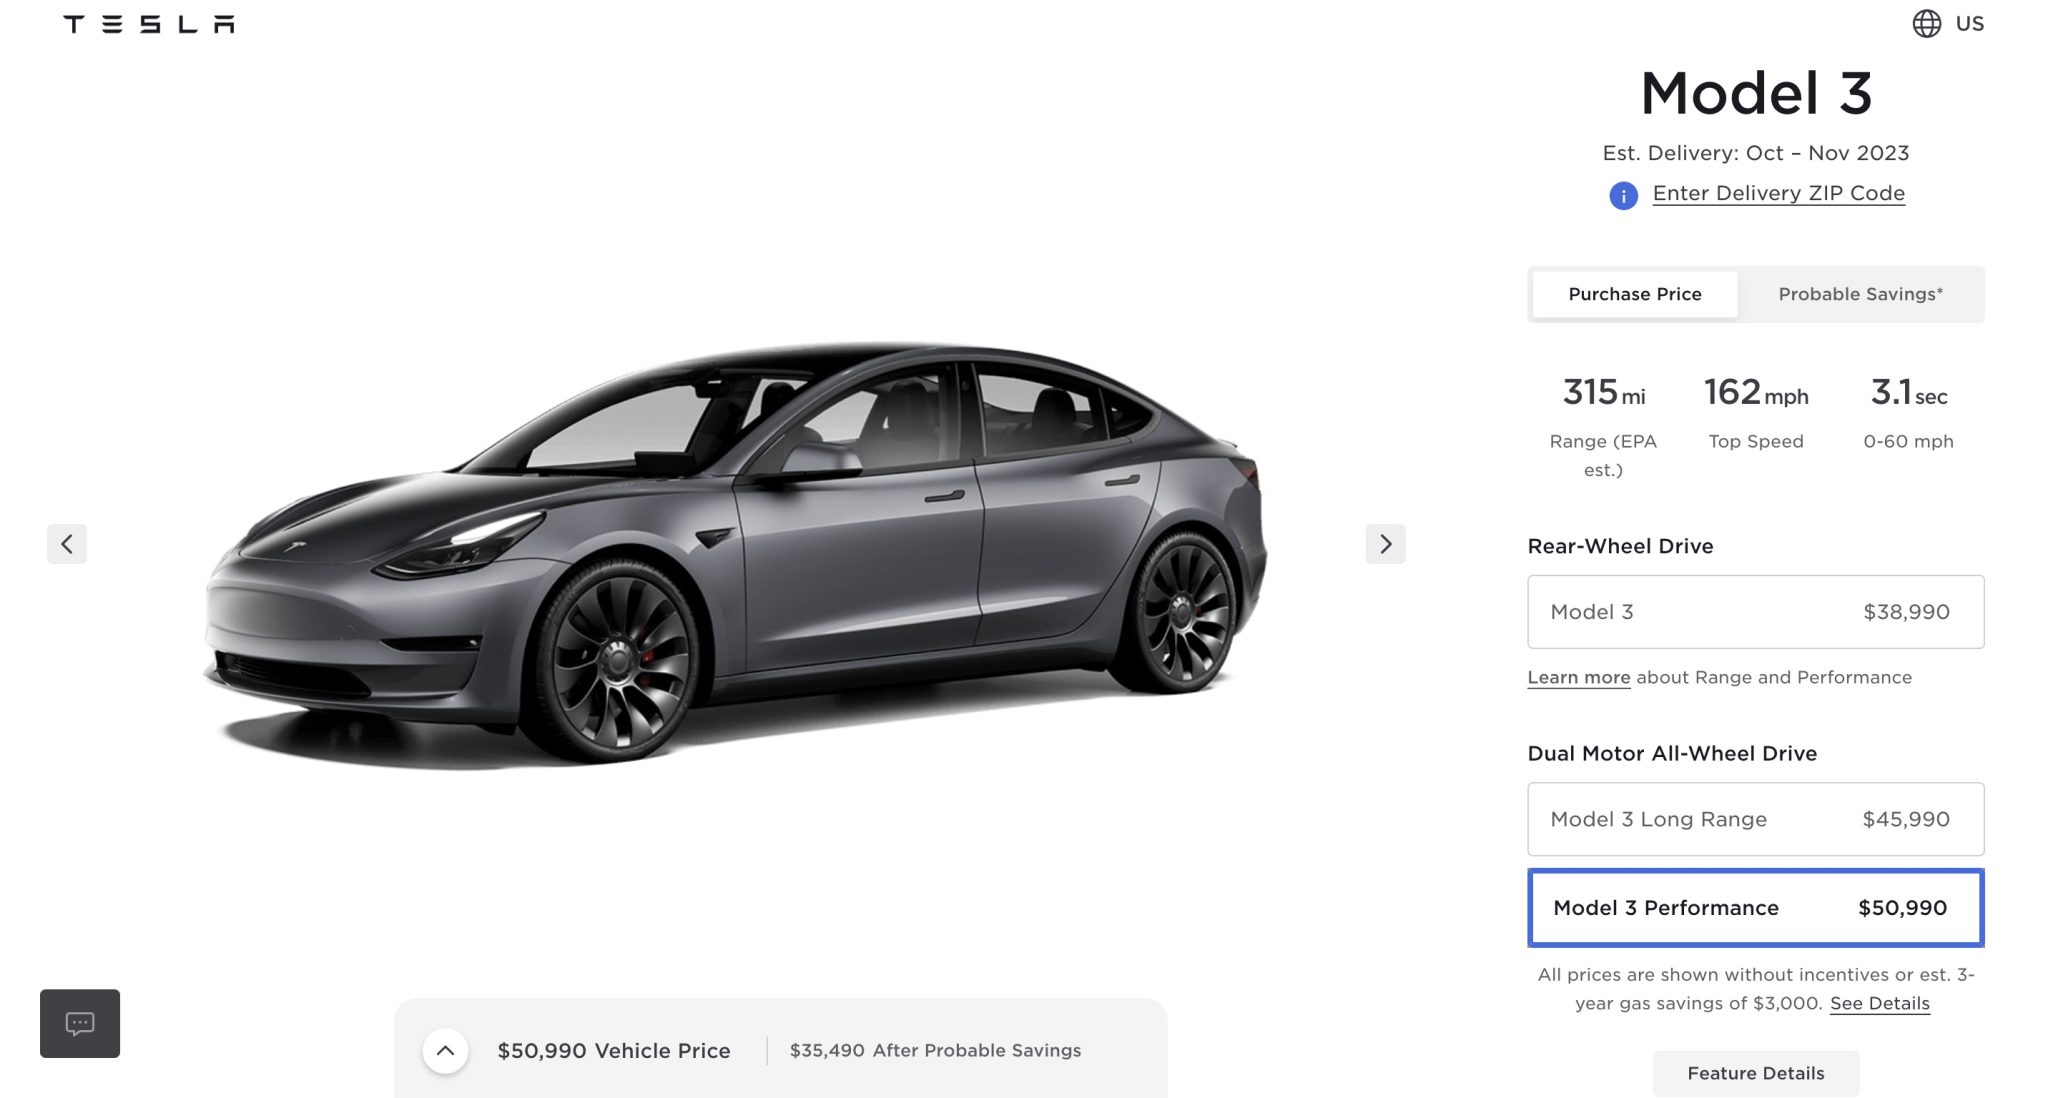 После невыполнения целевых показателей продаж Tesla снижает цены на Model 3 и Model Y в США.